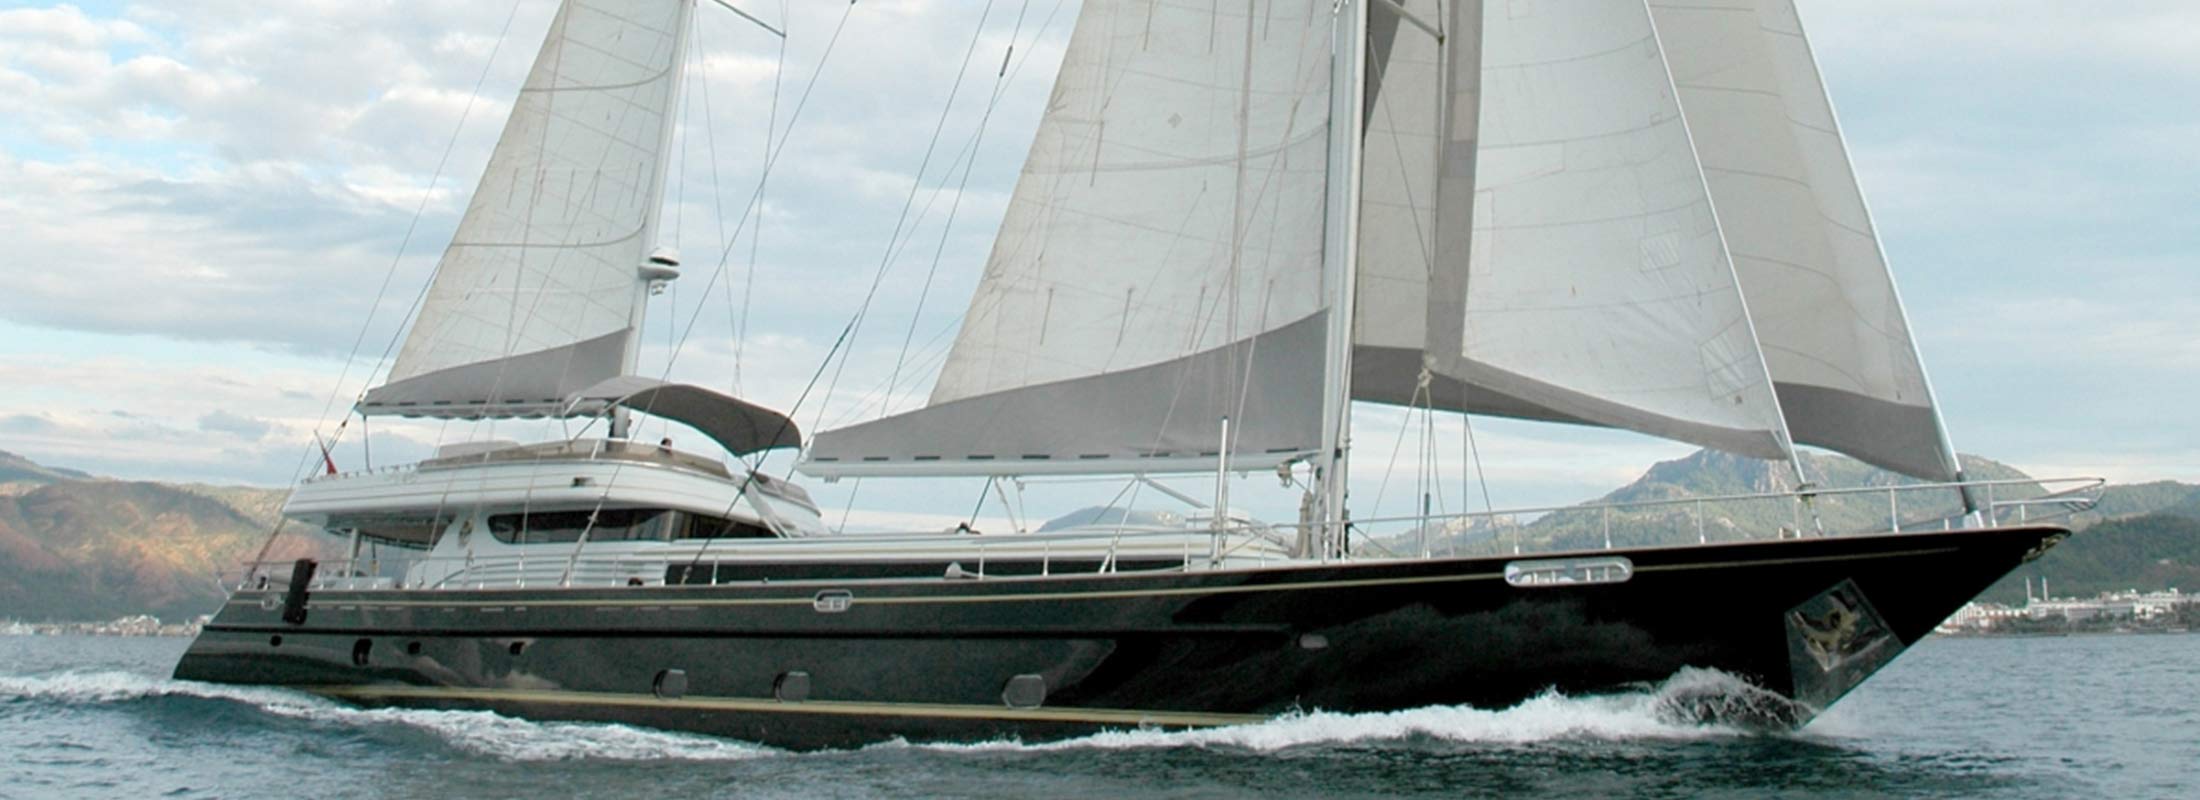 Suheyla Sultan Sailing Yacht for Charter Mediterranean slider 1 